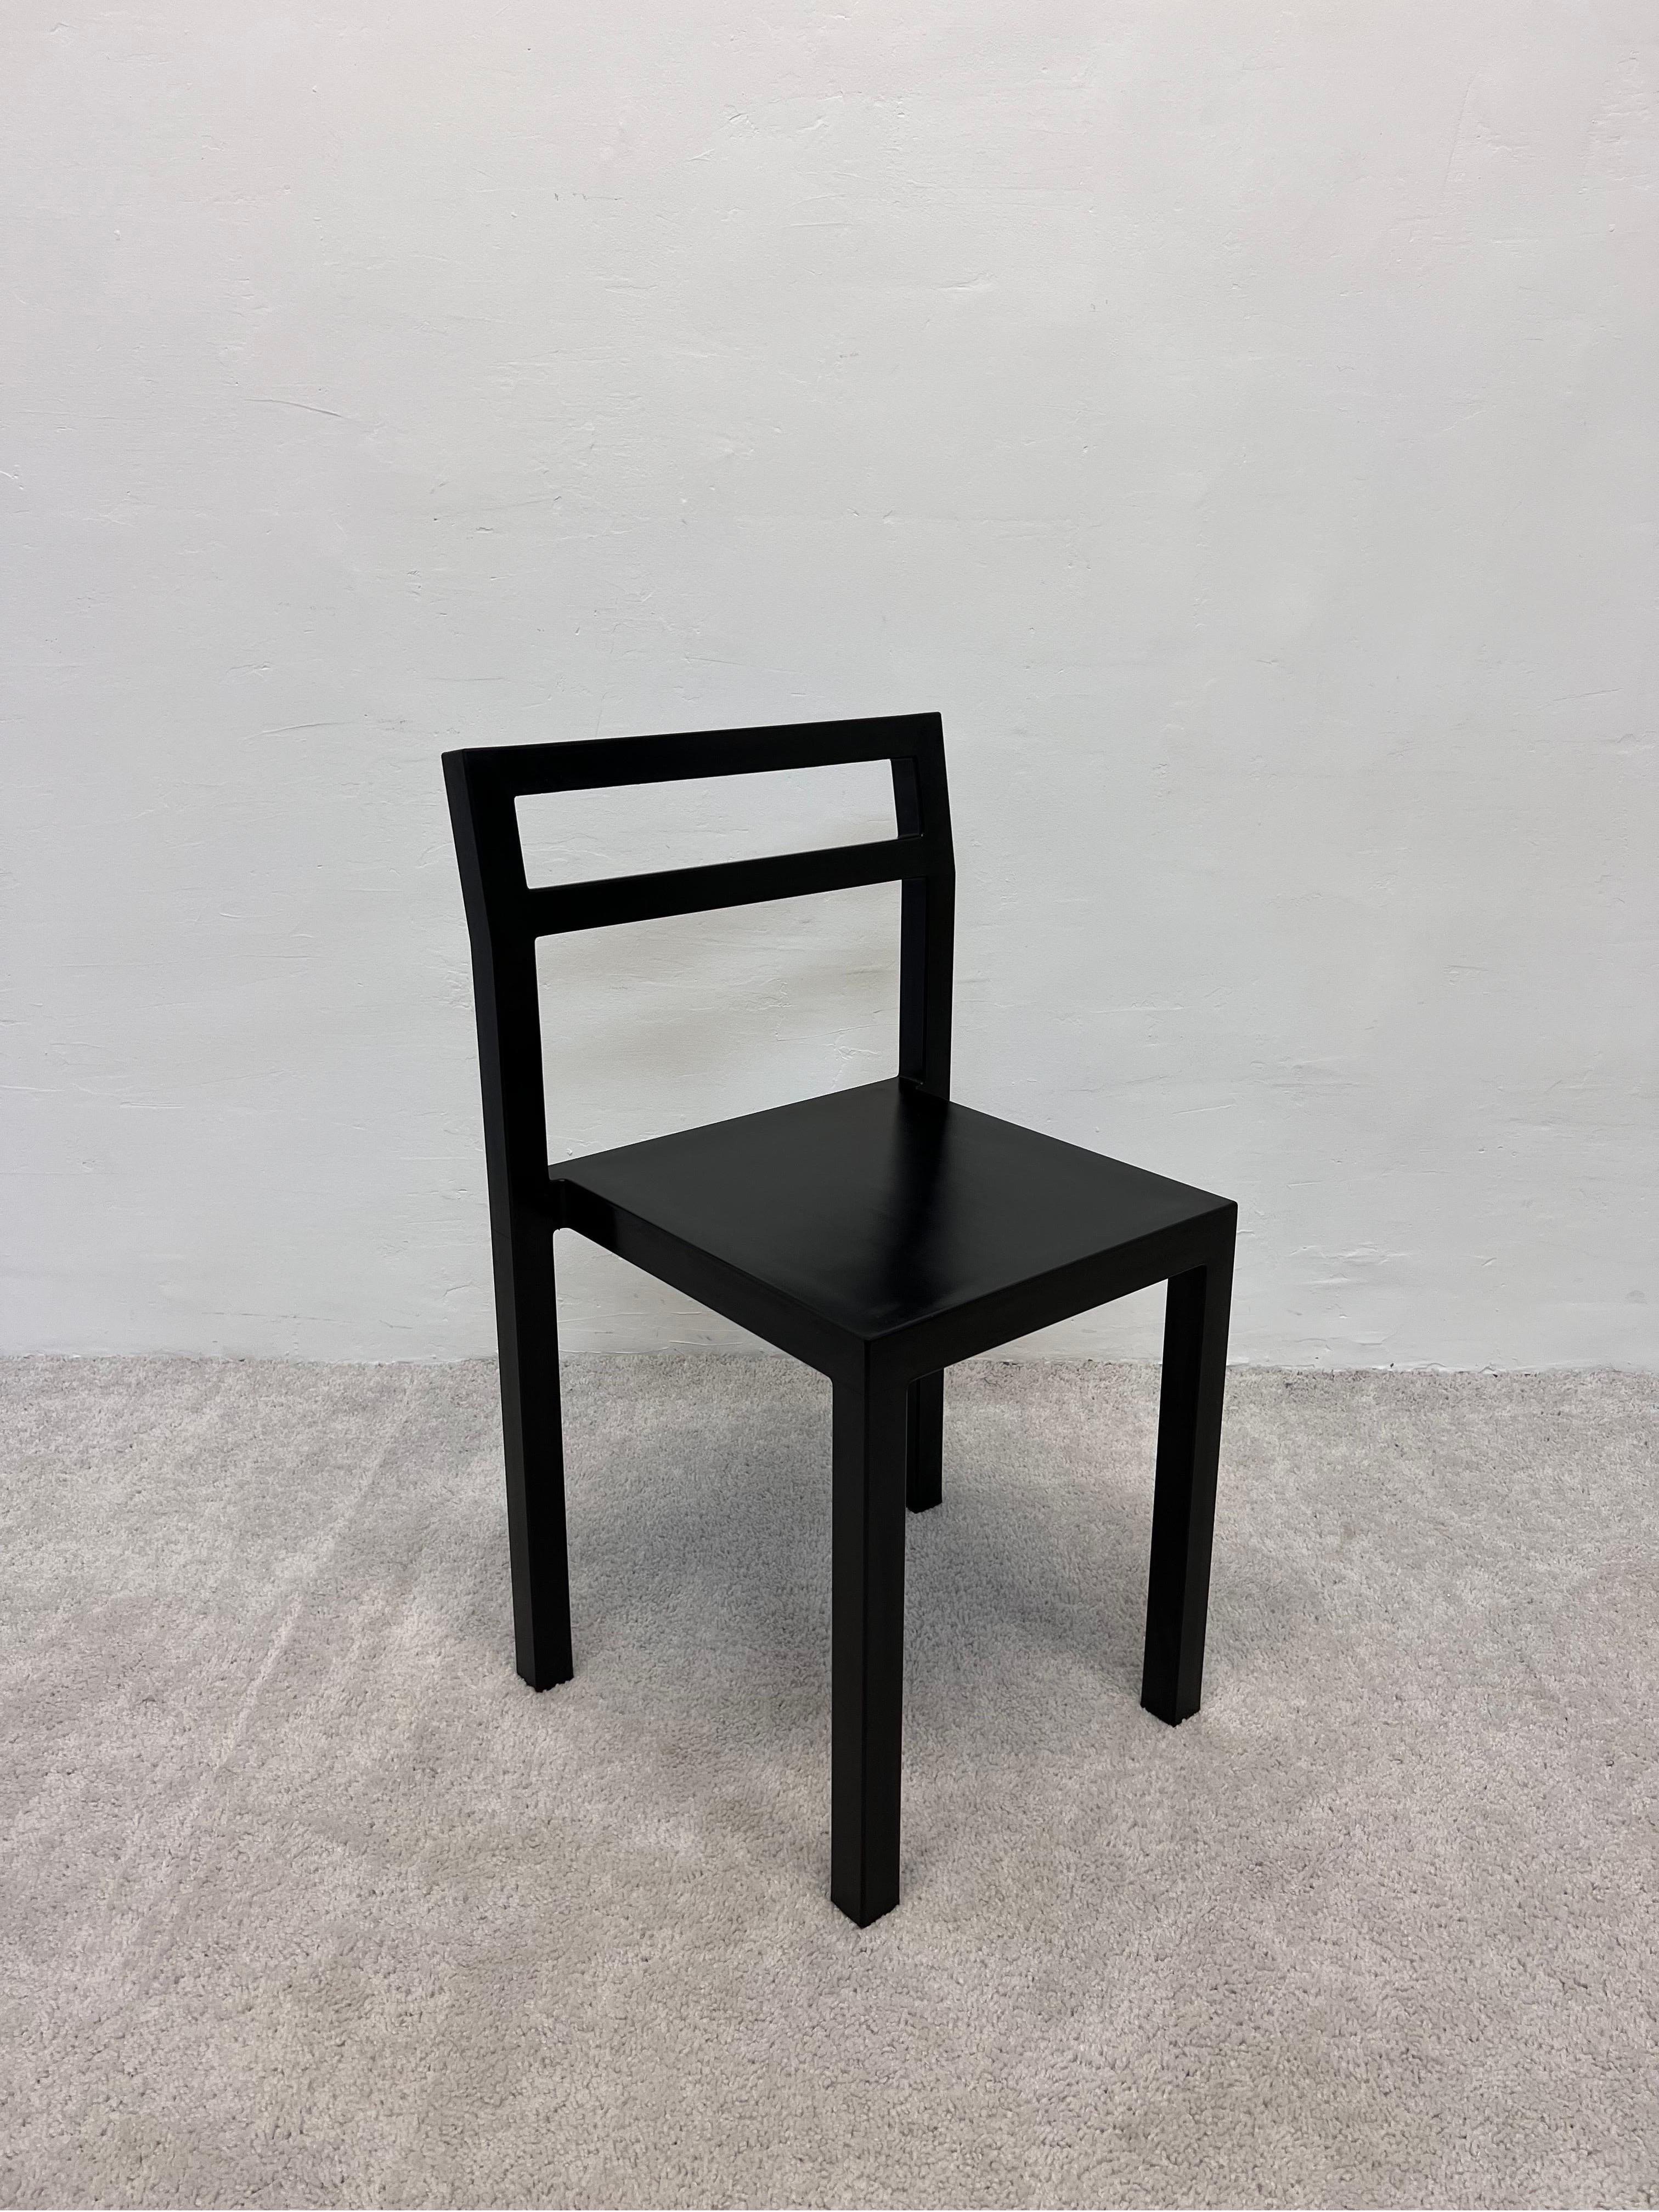 Modern Black Non Chair Designed by Komplot for Kallemo Ab, Sweden 2000